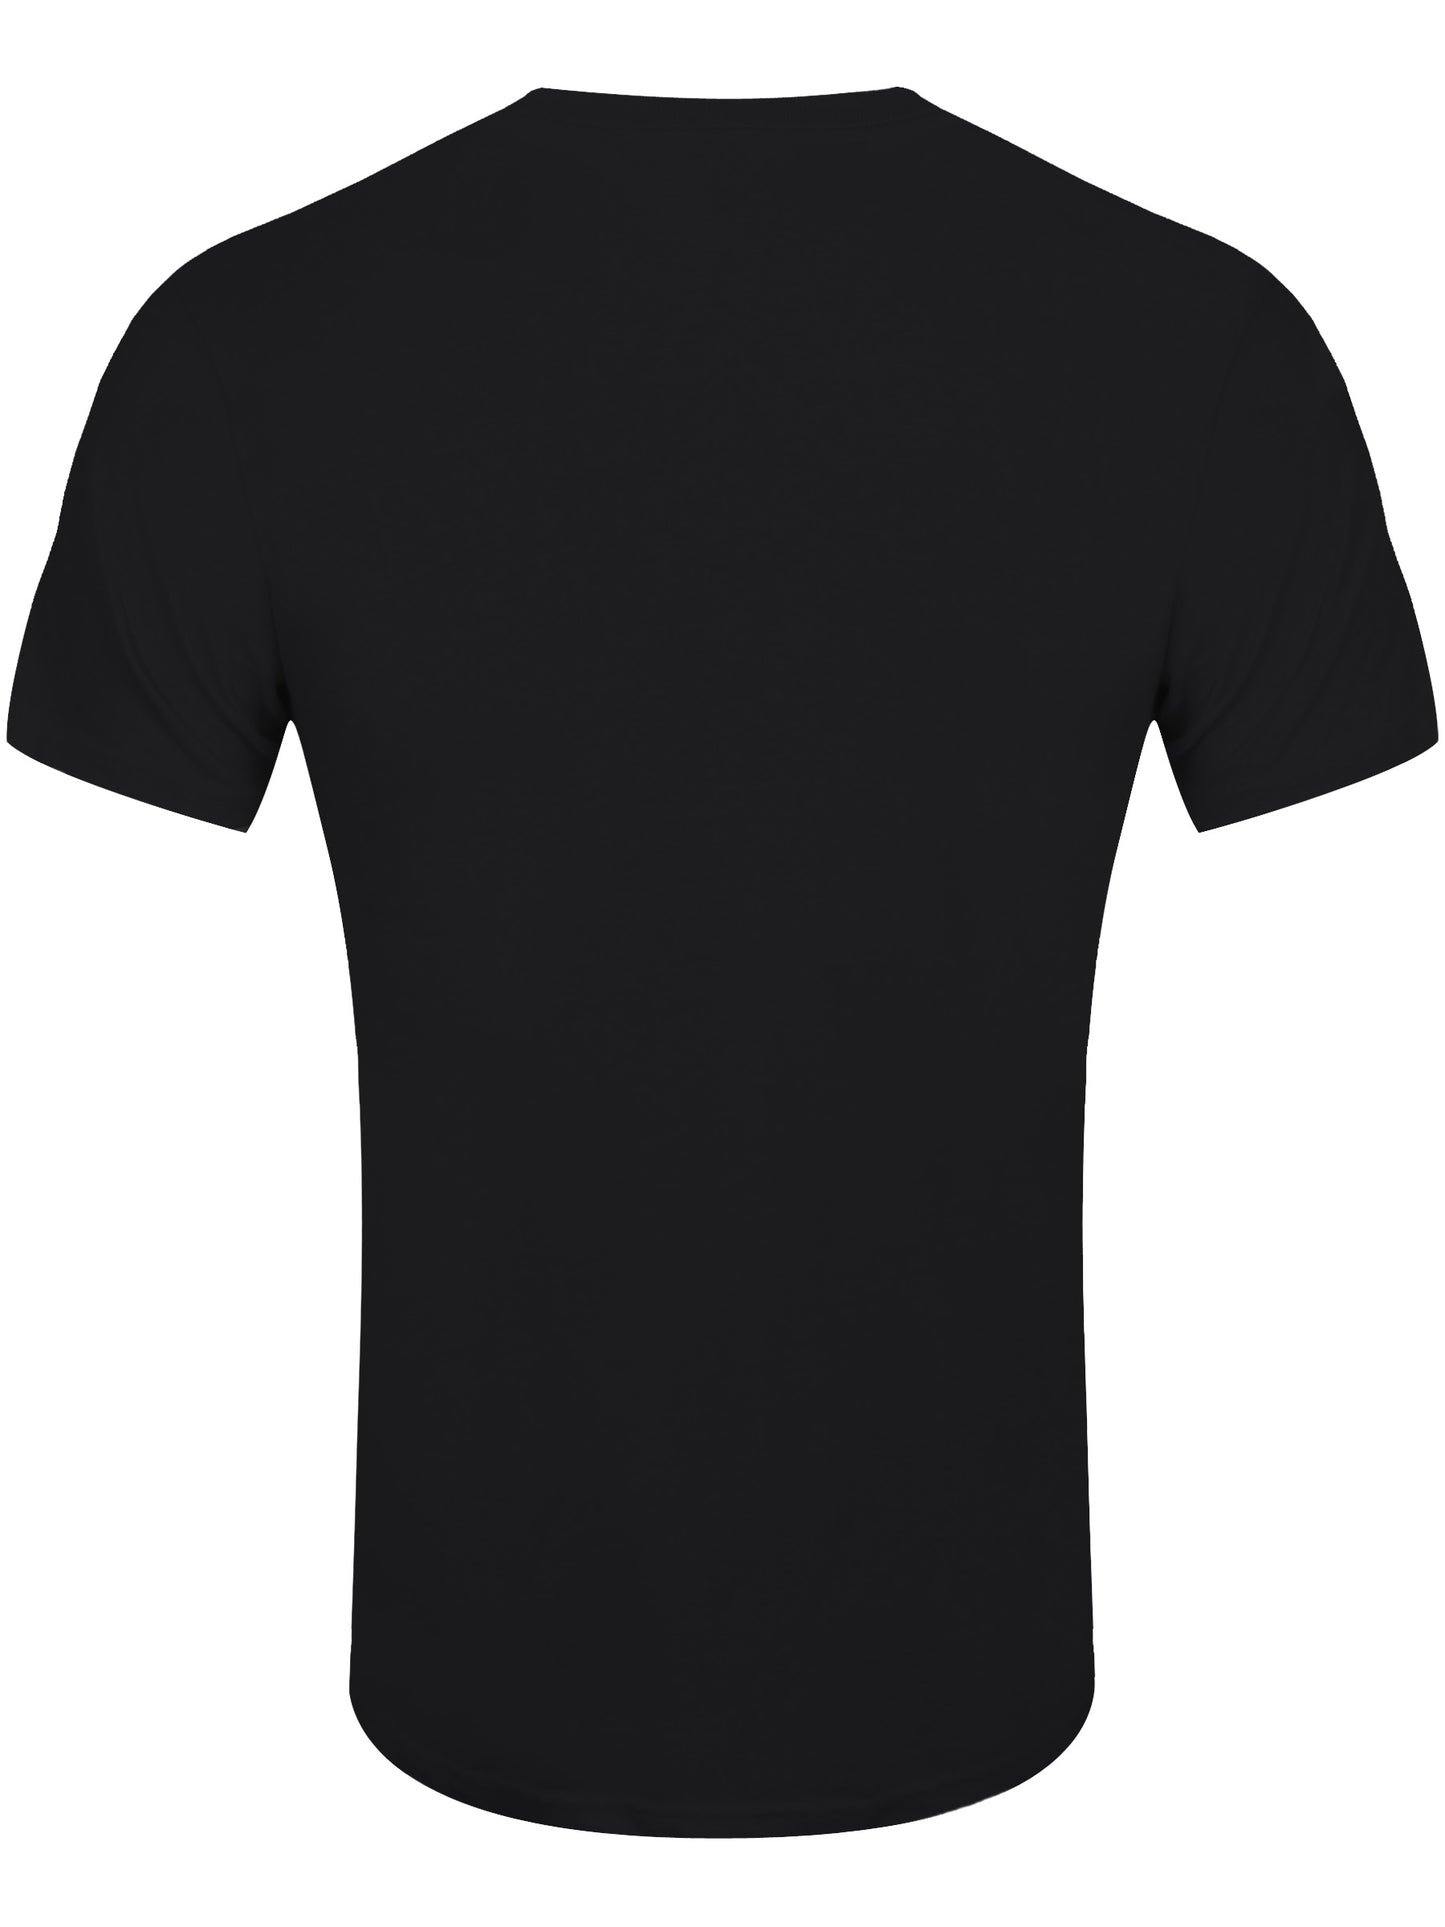 Iron Maiden Eddie Warrior Men's Black T-Shirt